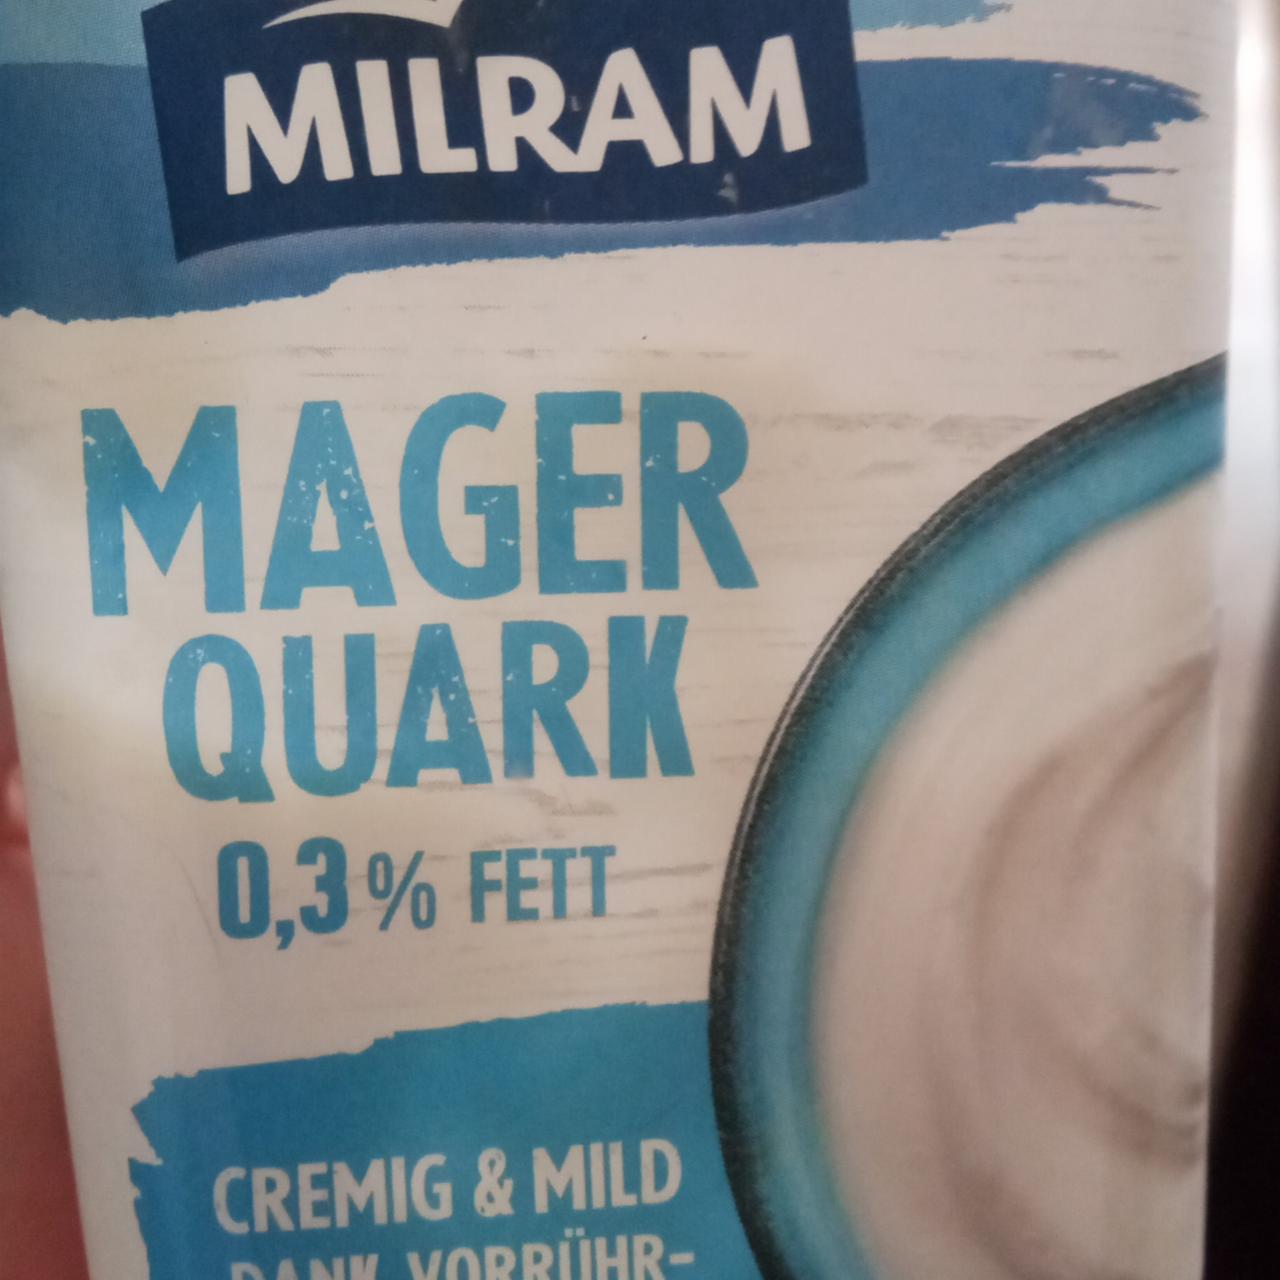 Fotografie - Mager Quark 0,3% Fett Milram